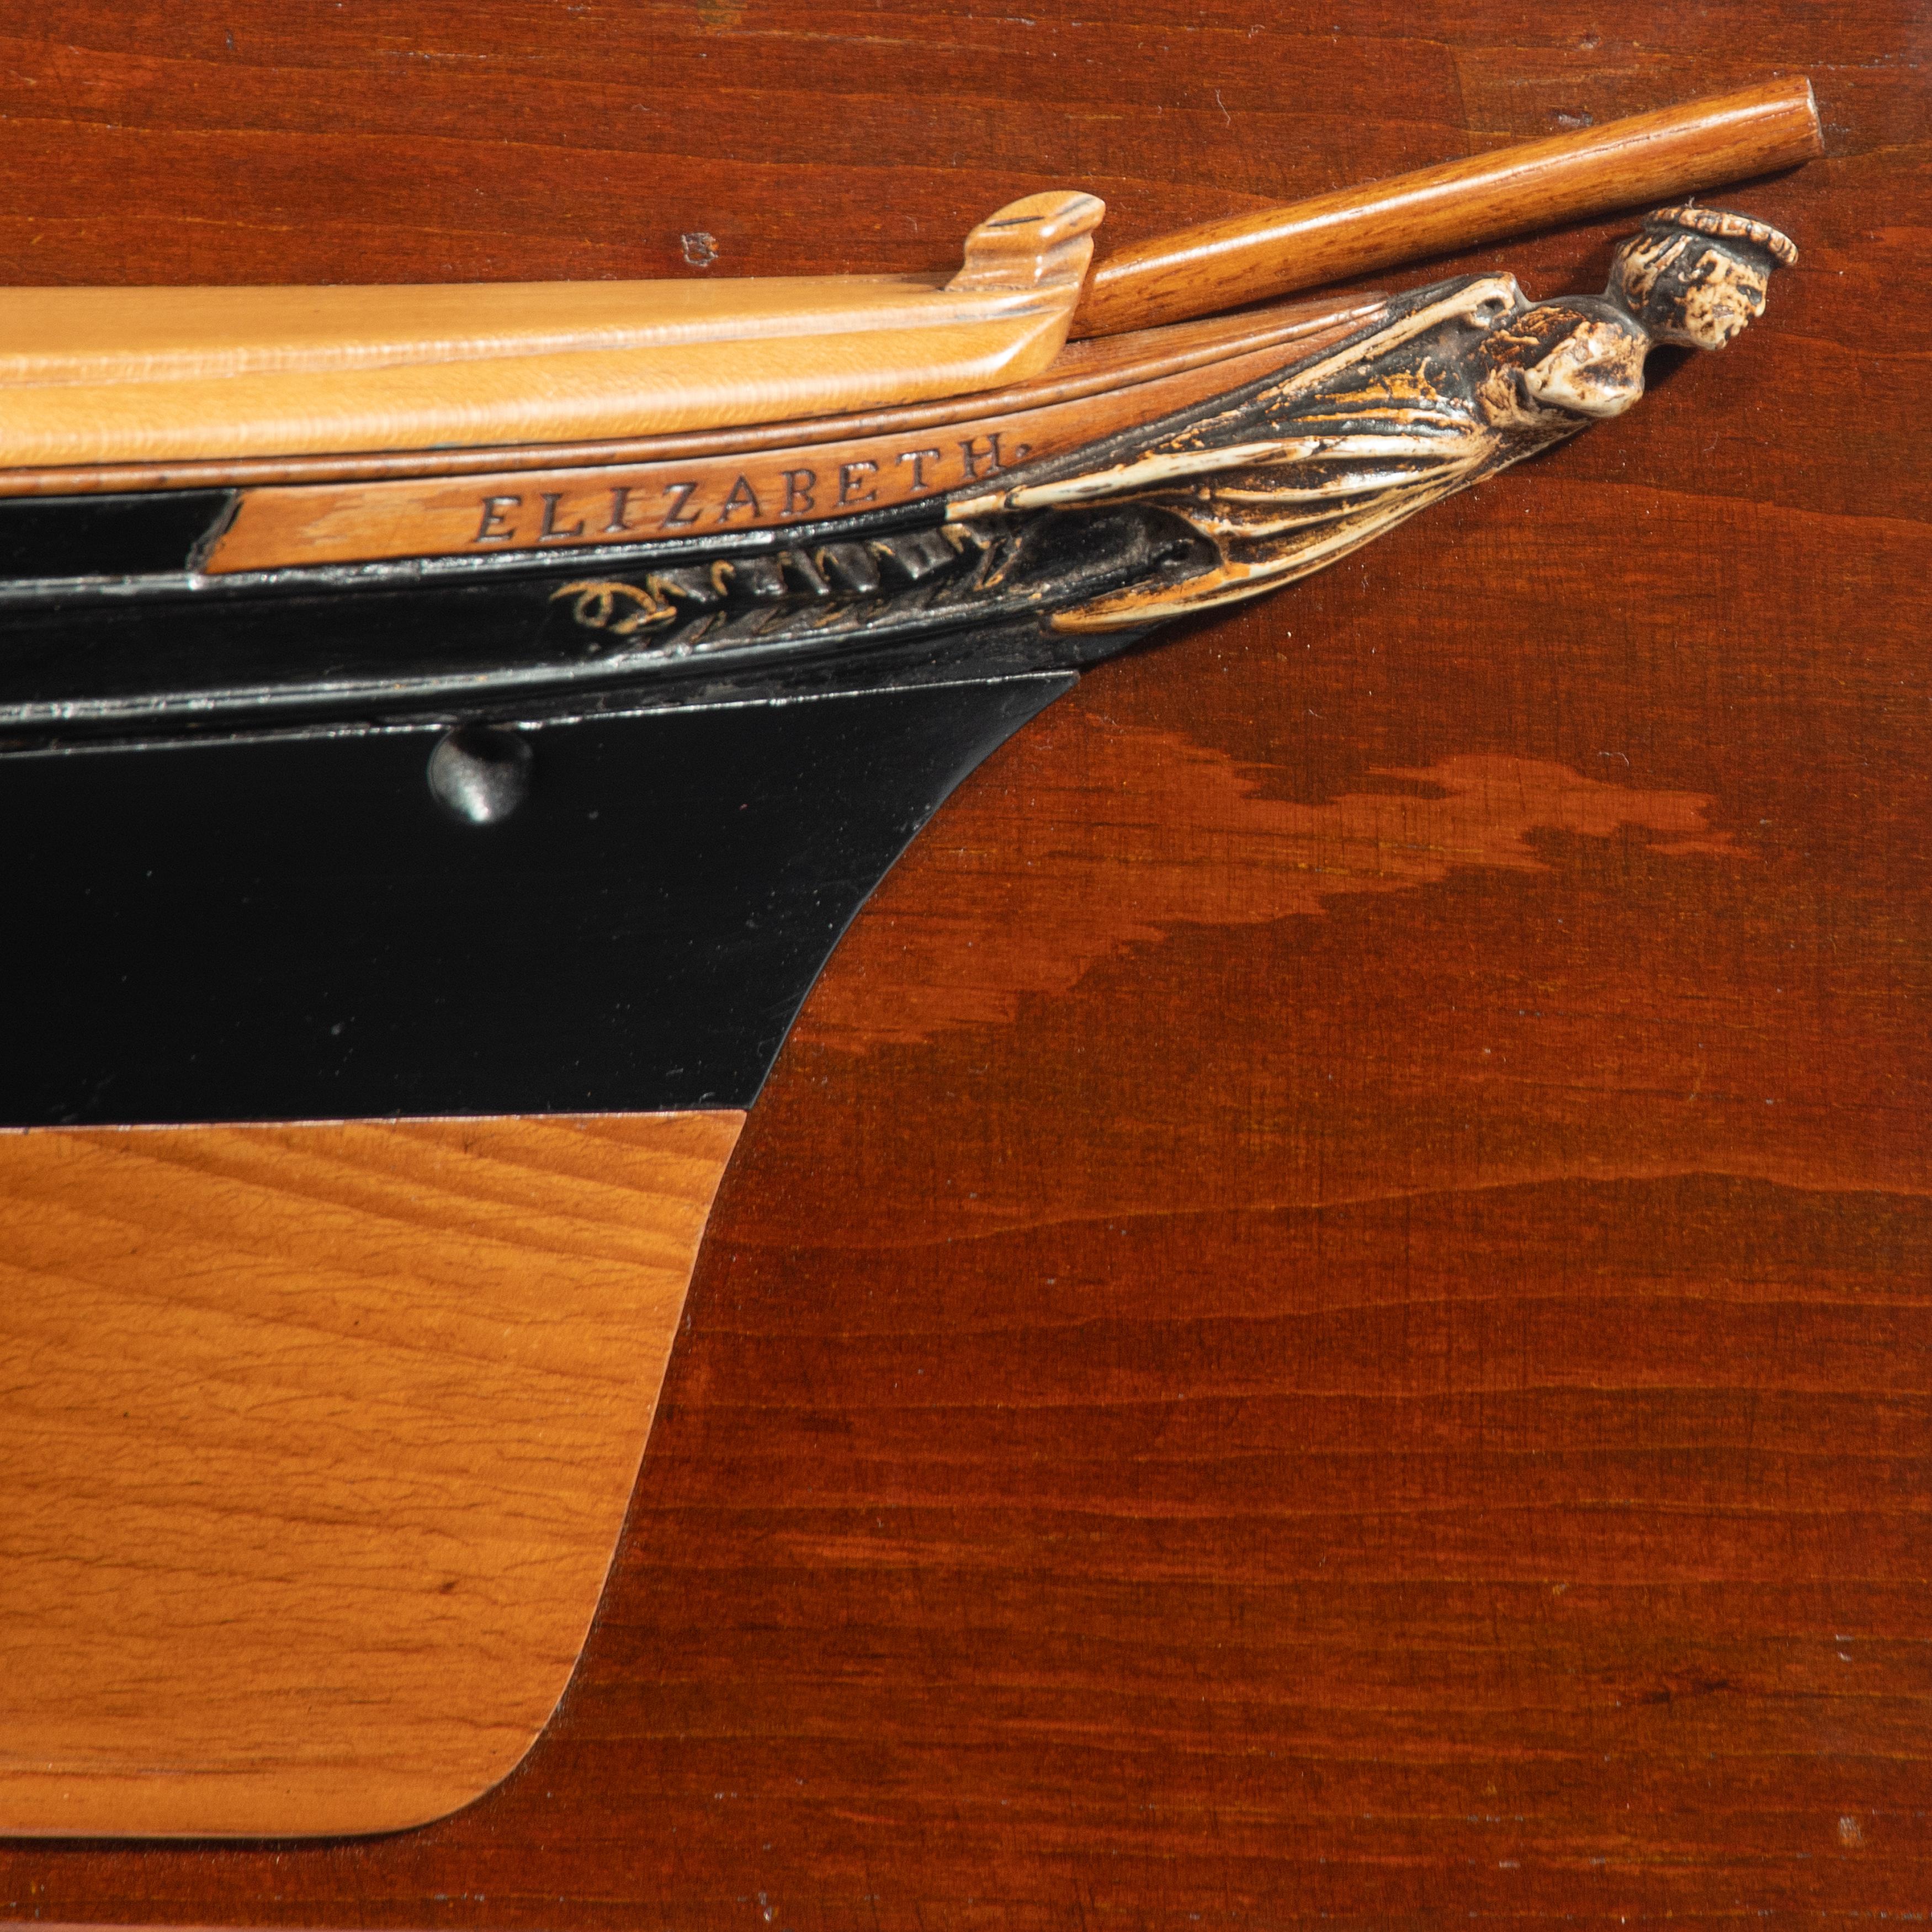 Ein viktorianisches Halbrumpfmodell des dreimastigen Segelschiffs 'Elizabeth', dargestellt nach rechts, der geformte Weichholzrumpf mit schwarz gestrichenen Oberseiten und aufgelegter Scherlinie und Schandeckel, der Bugspriet in Form einer gekrönten